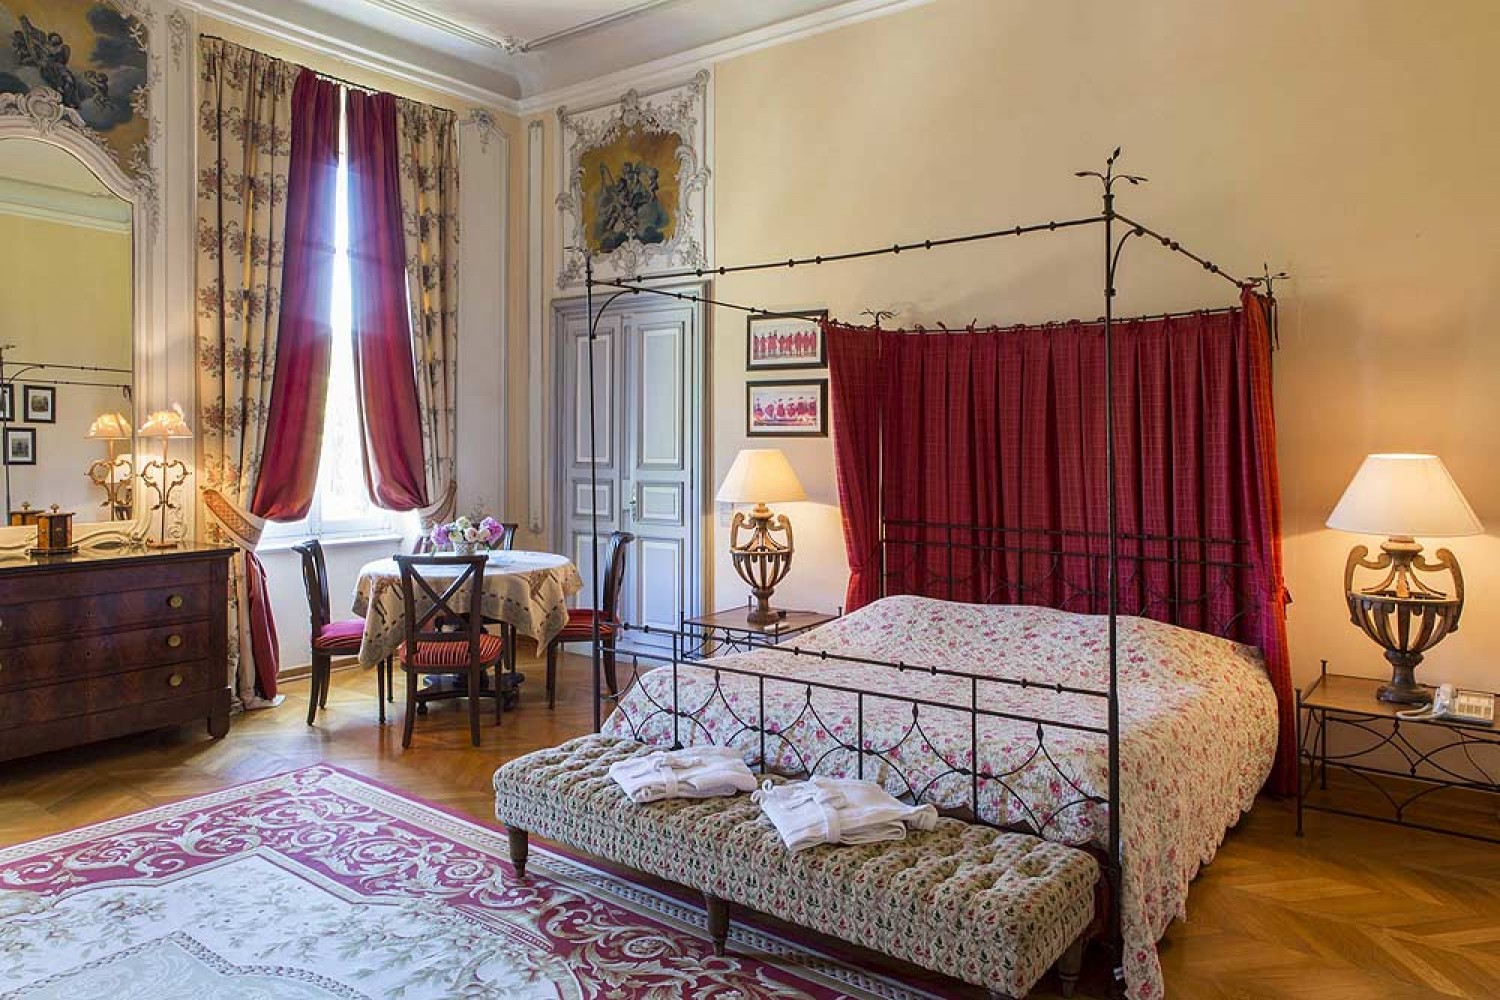 golf-expedition-golf-reizen-frankrijk-regio-provence-chateau-talaud-slaapkamer-twee-personen-klassieke-stijl-tafel-met-stoelen.jpg